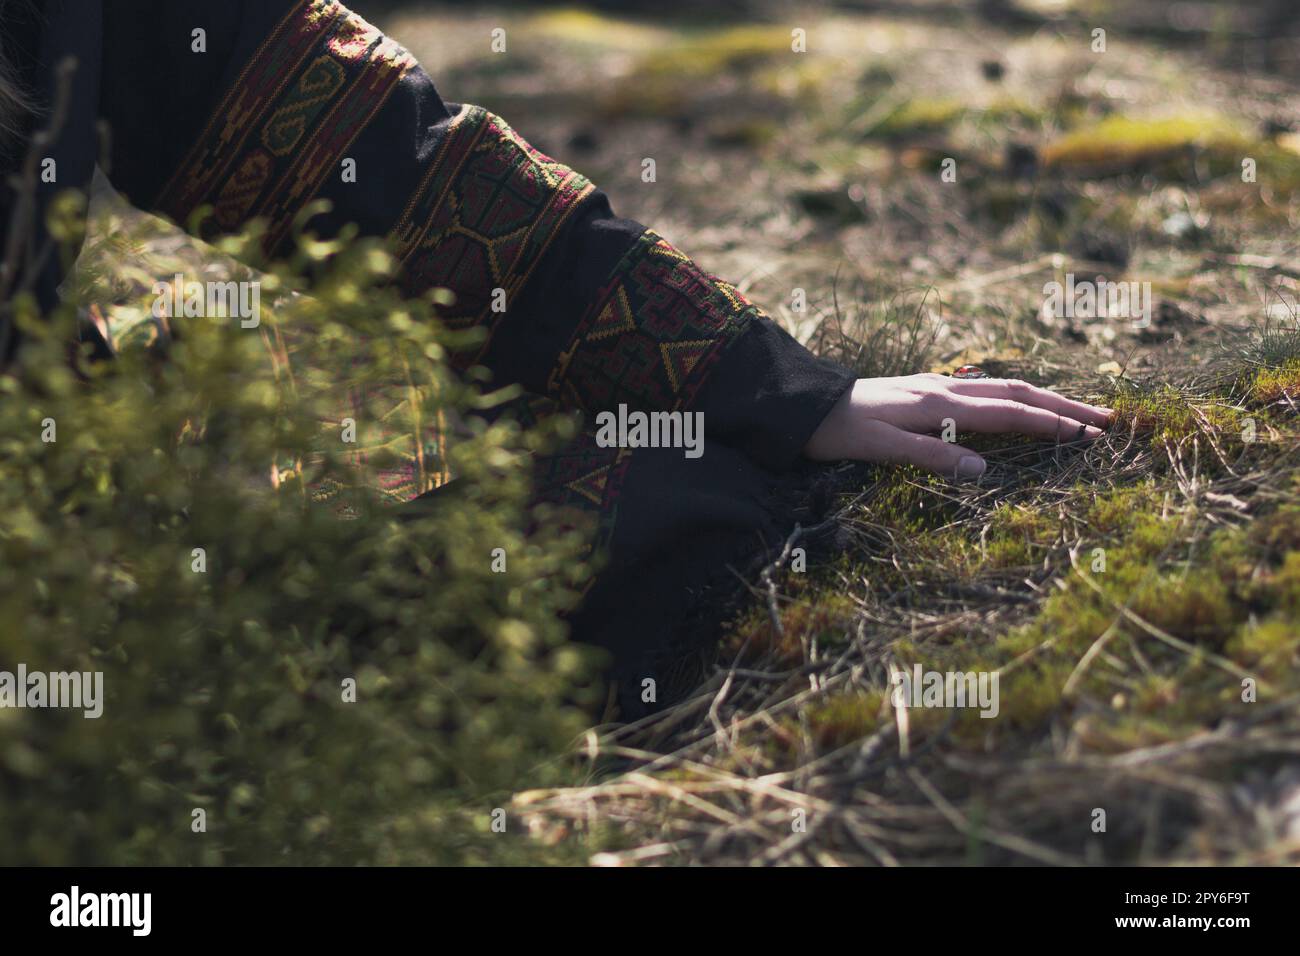 Nahaufnahme weiblicher Hand in ethnischer Kleidung beim Berühren von Gras Konzeptfoto Stockfoto